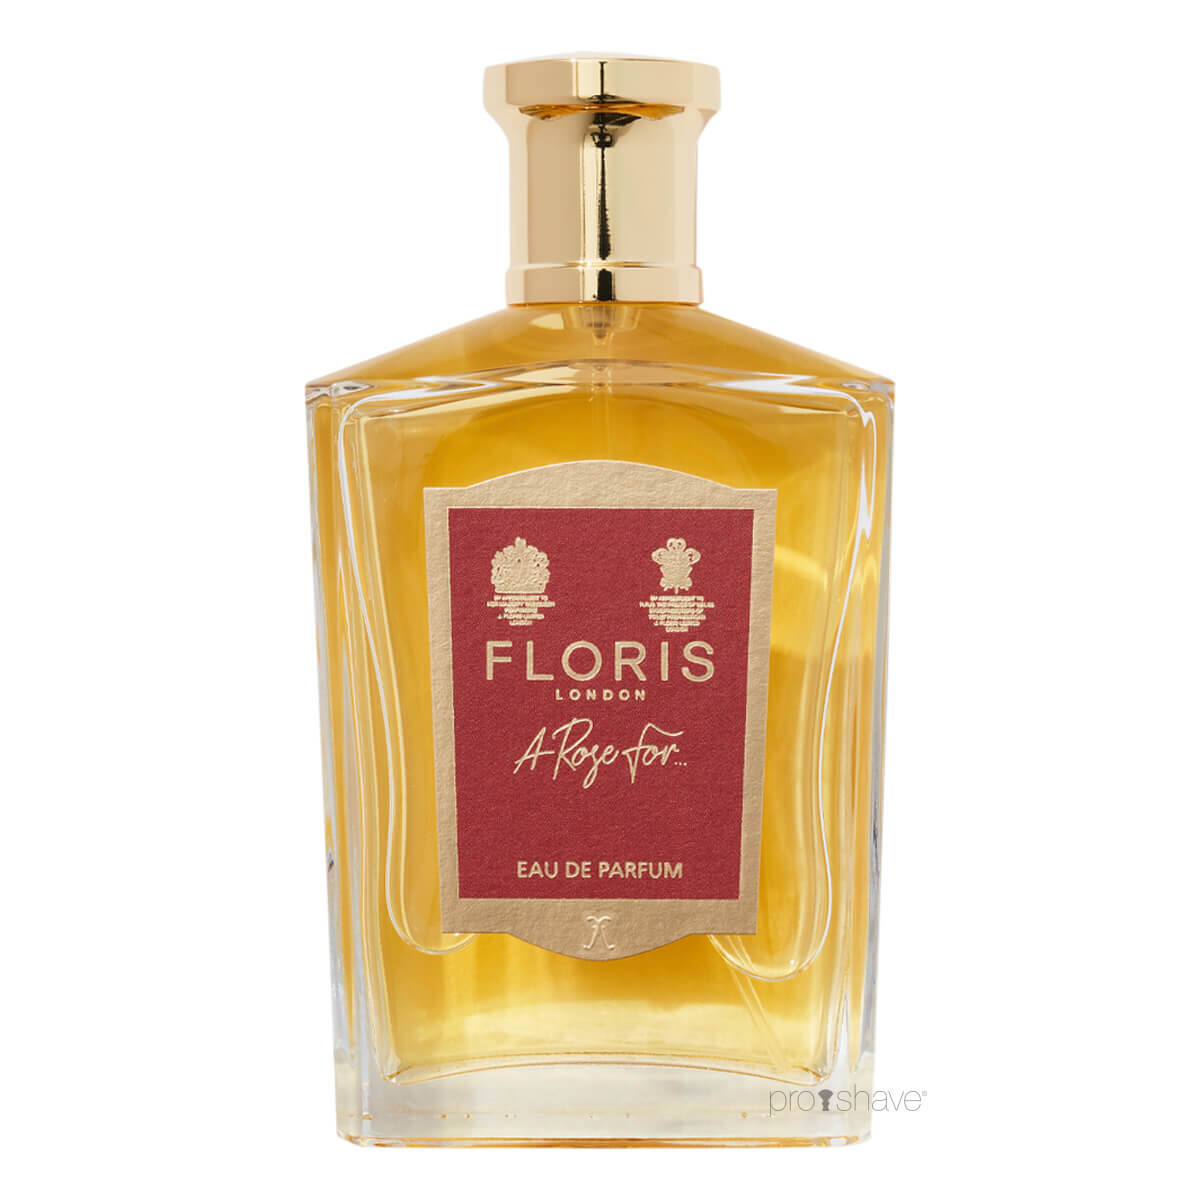 Billede af Floris A Rose Forâ¦, Eau de Parfum, 100 ml.